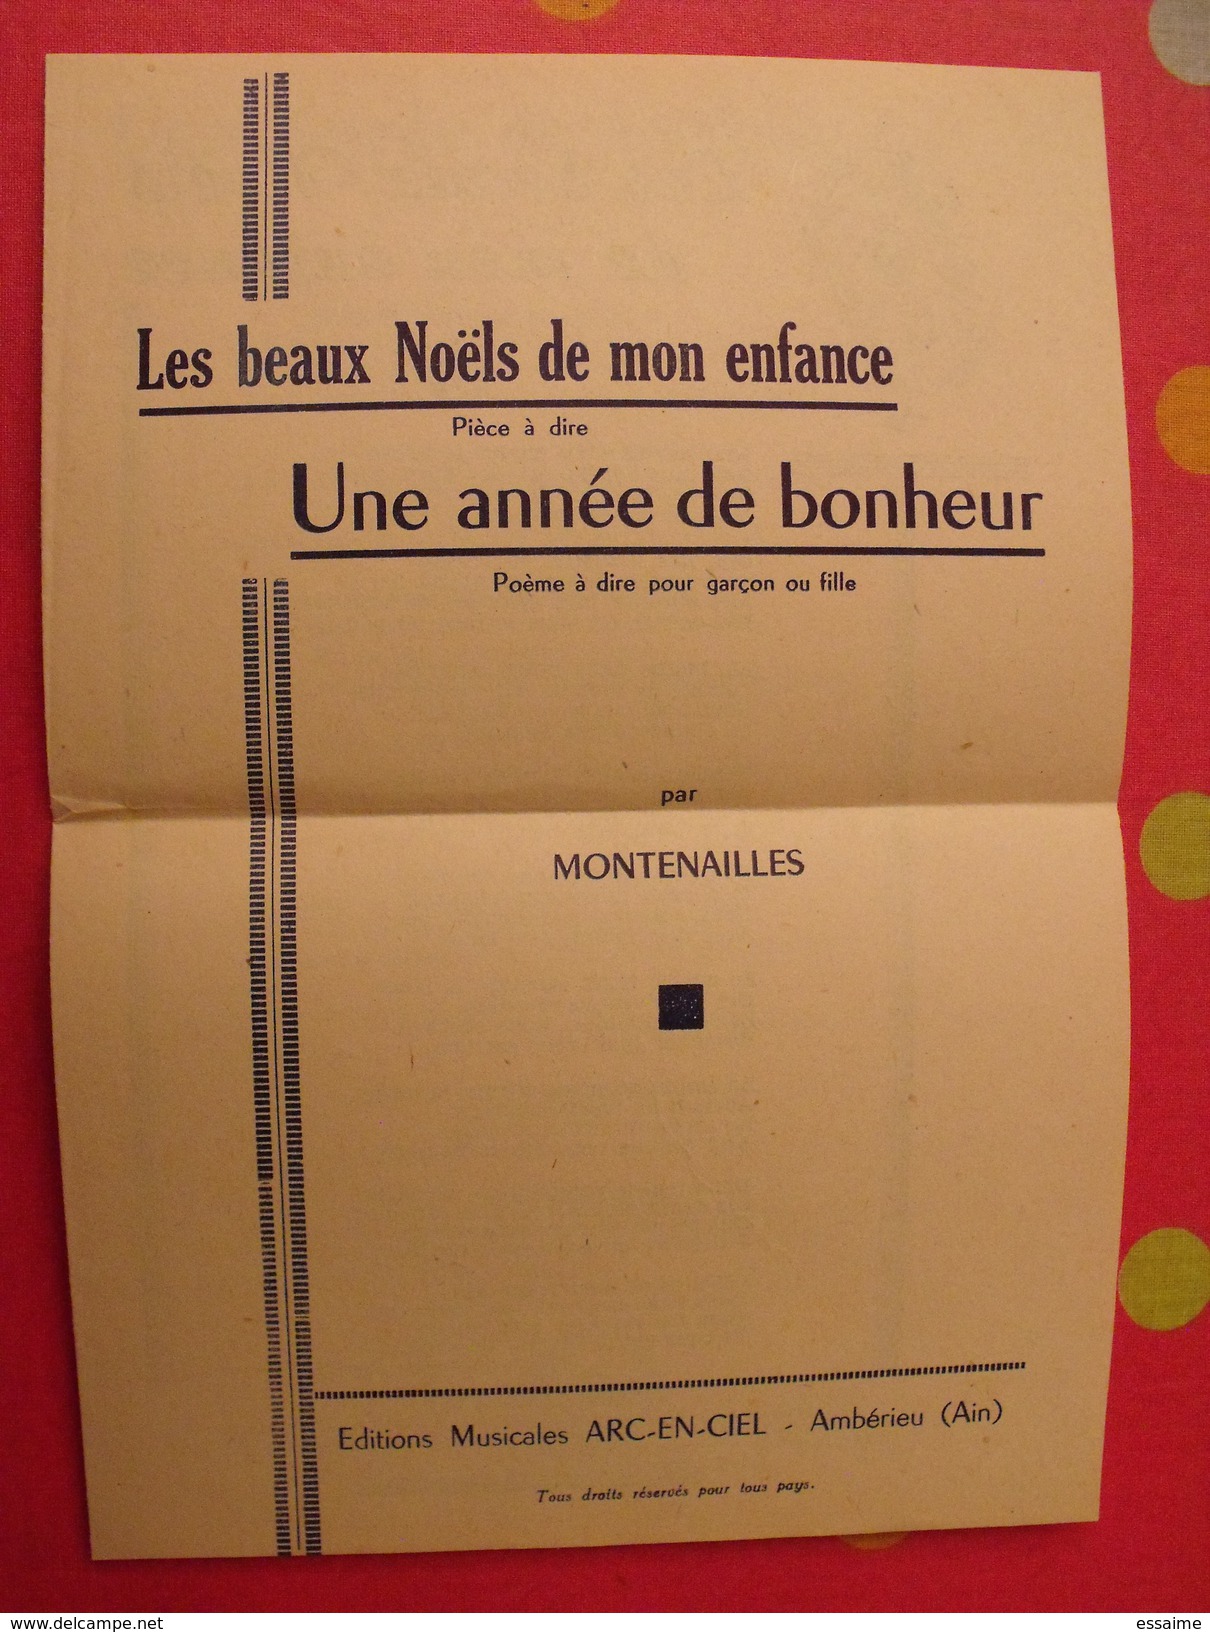 Les Beaux Noels De Mon Enfance. Une Année De Bonheur. Montenailles. Poème. Vers 1930 - Autores Franceses